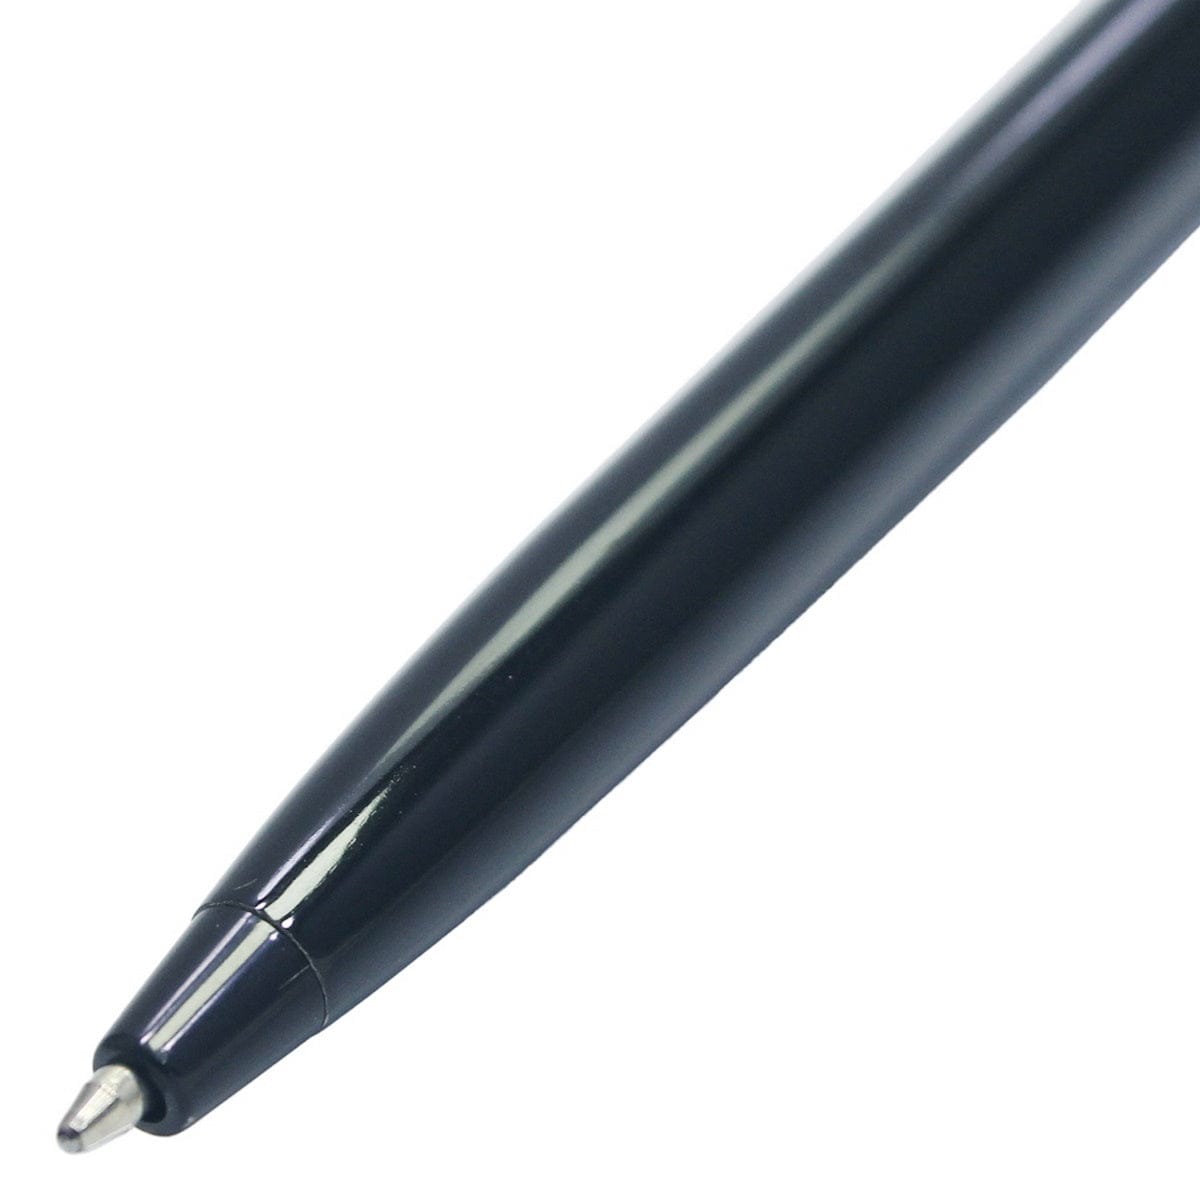 jags-mumbai Ball Pens Ball Pen Z109-9060Q BLACK 9060QBK